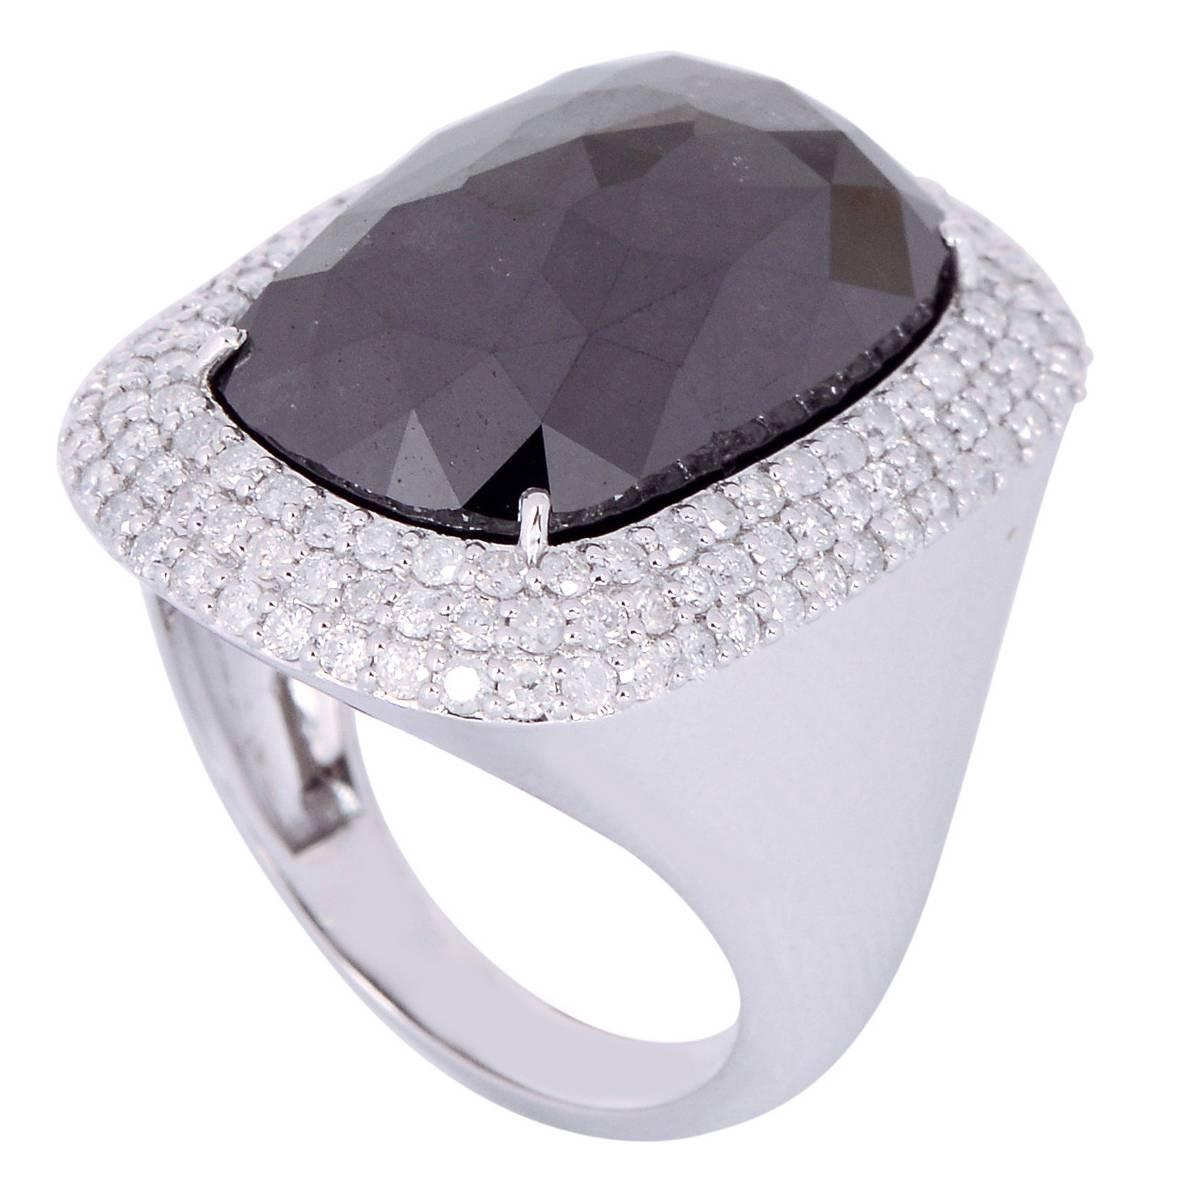 Gorgeous Black and White Diamond Gold Ring